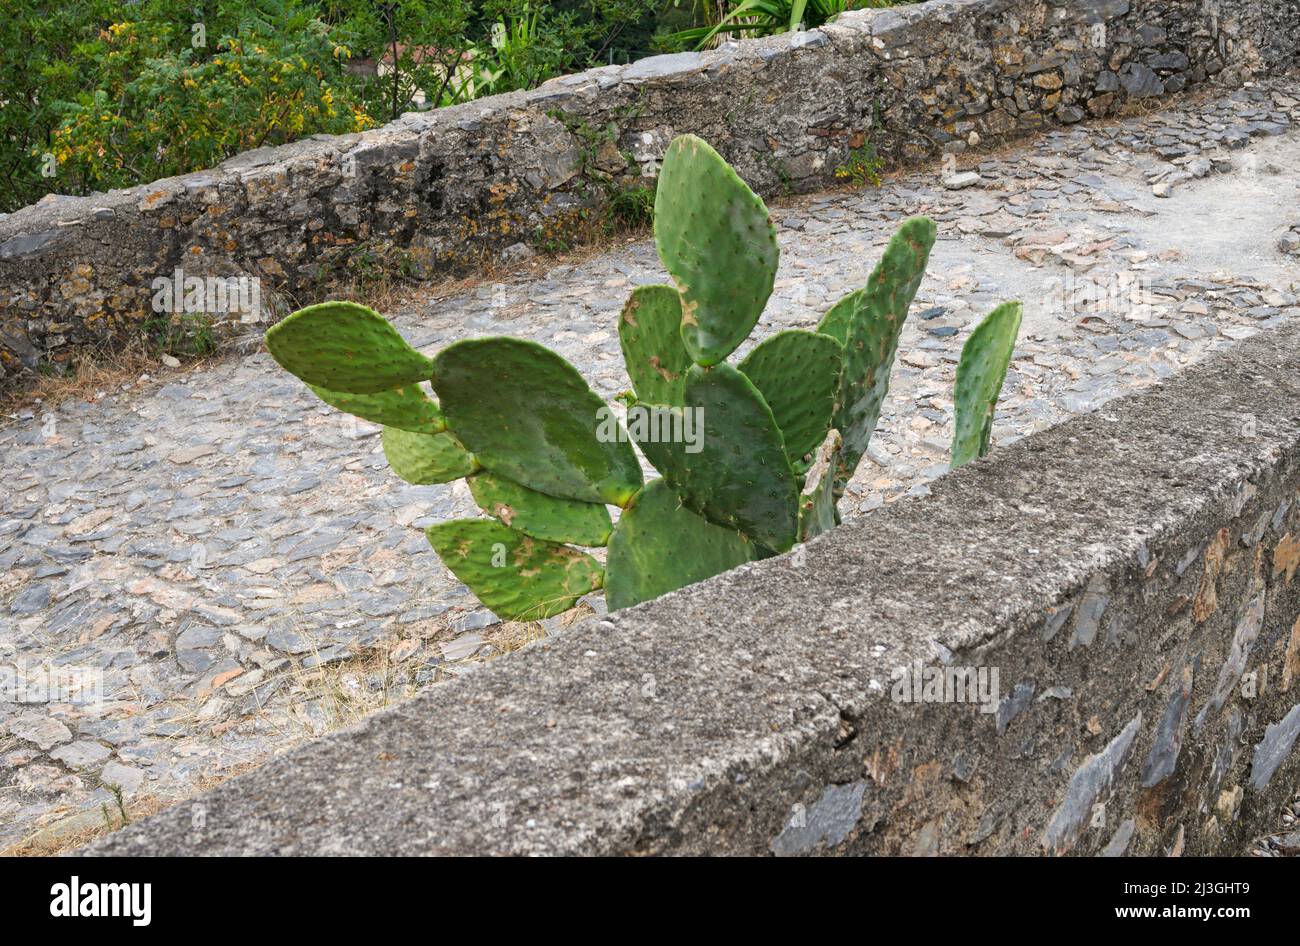 Higo indio (cactus Prickly peras) creciendo en un camino de piedra Foto de stock